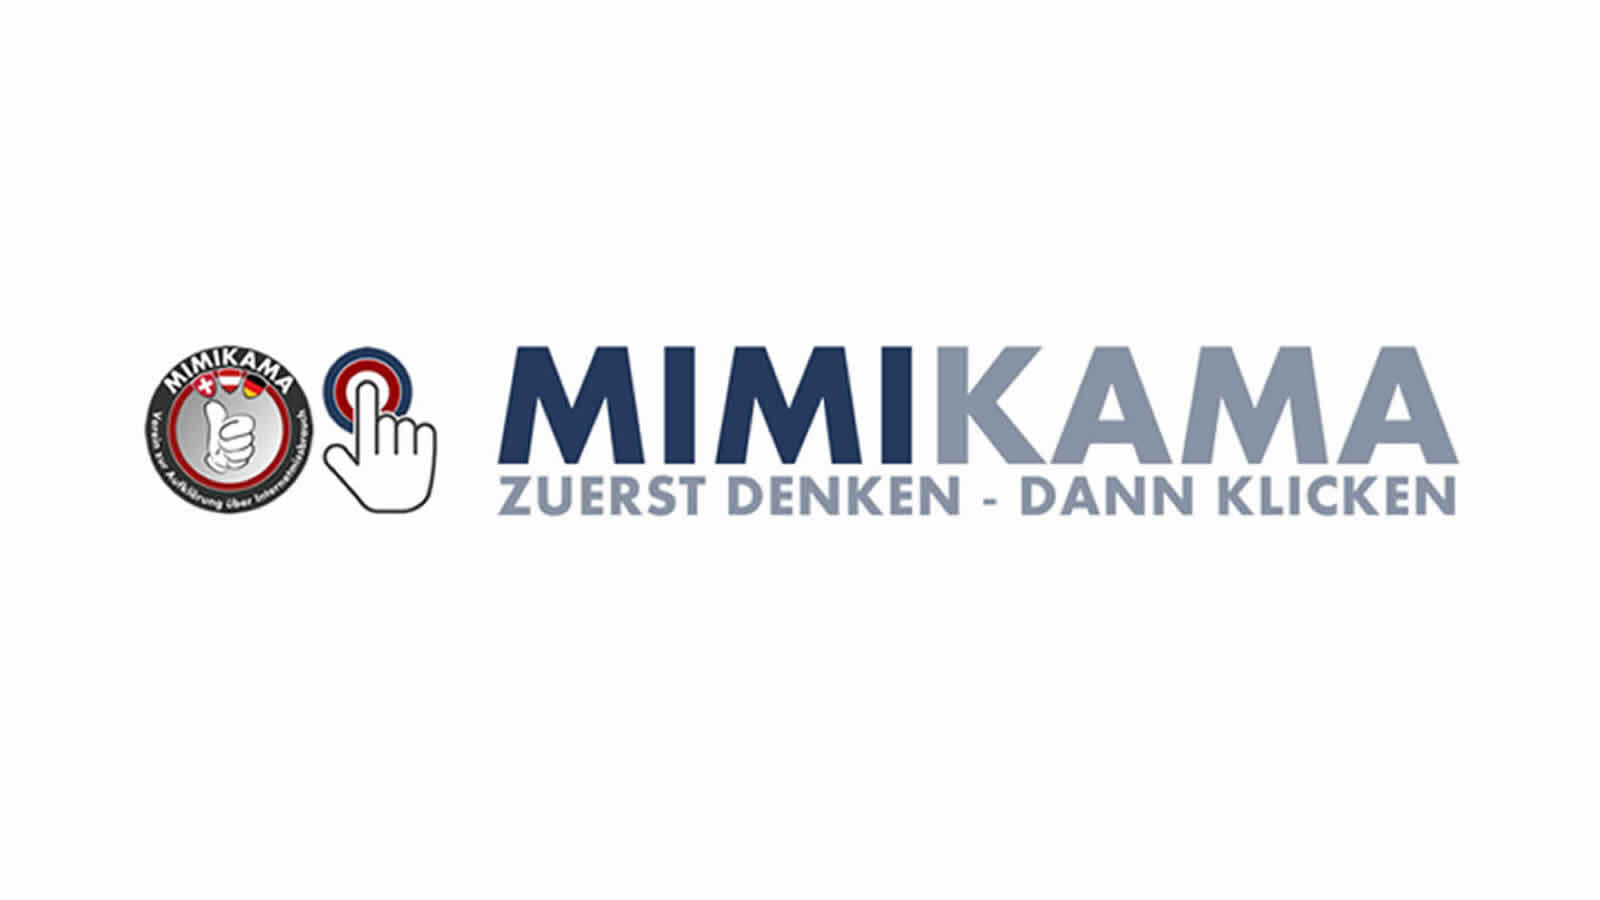 Mimikama-Verein zur Aufklärung über Internetmissbrauch